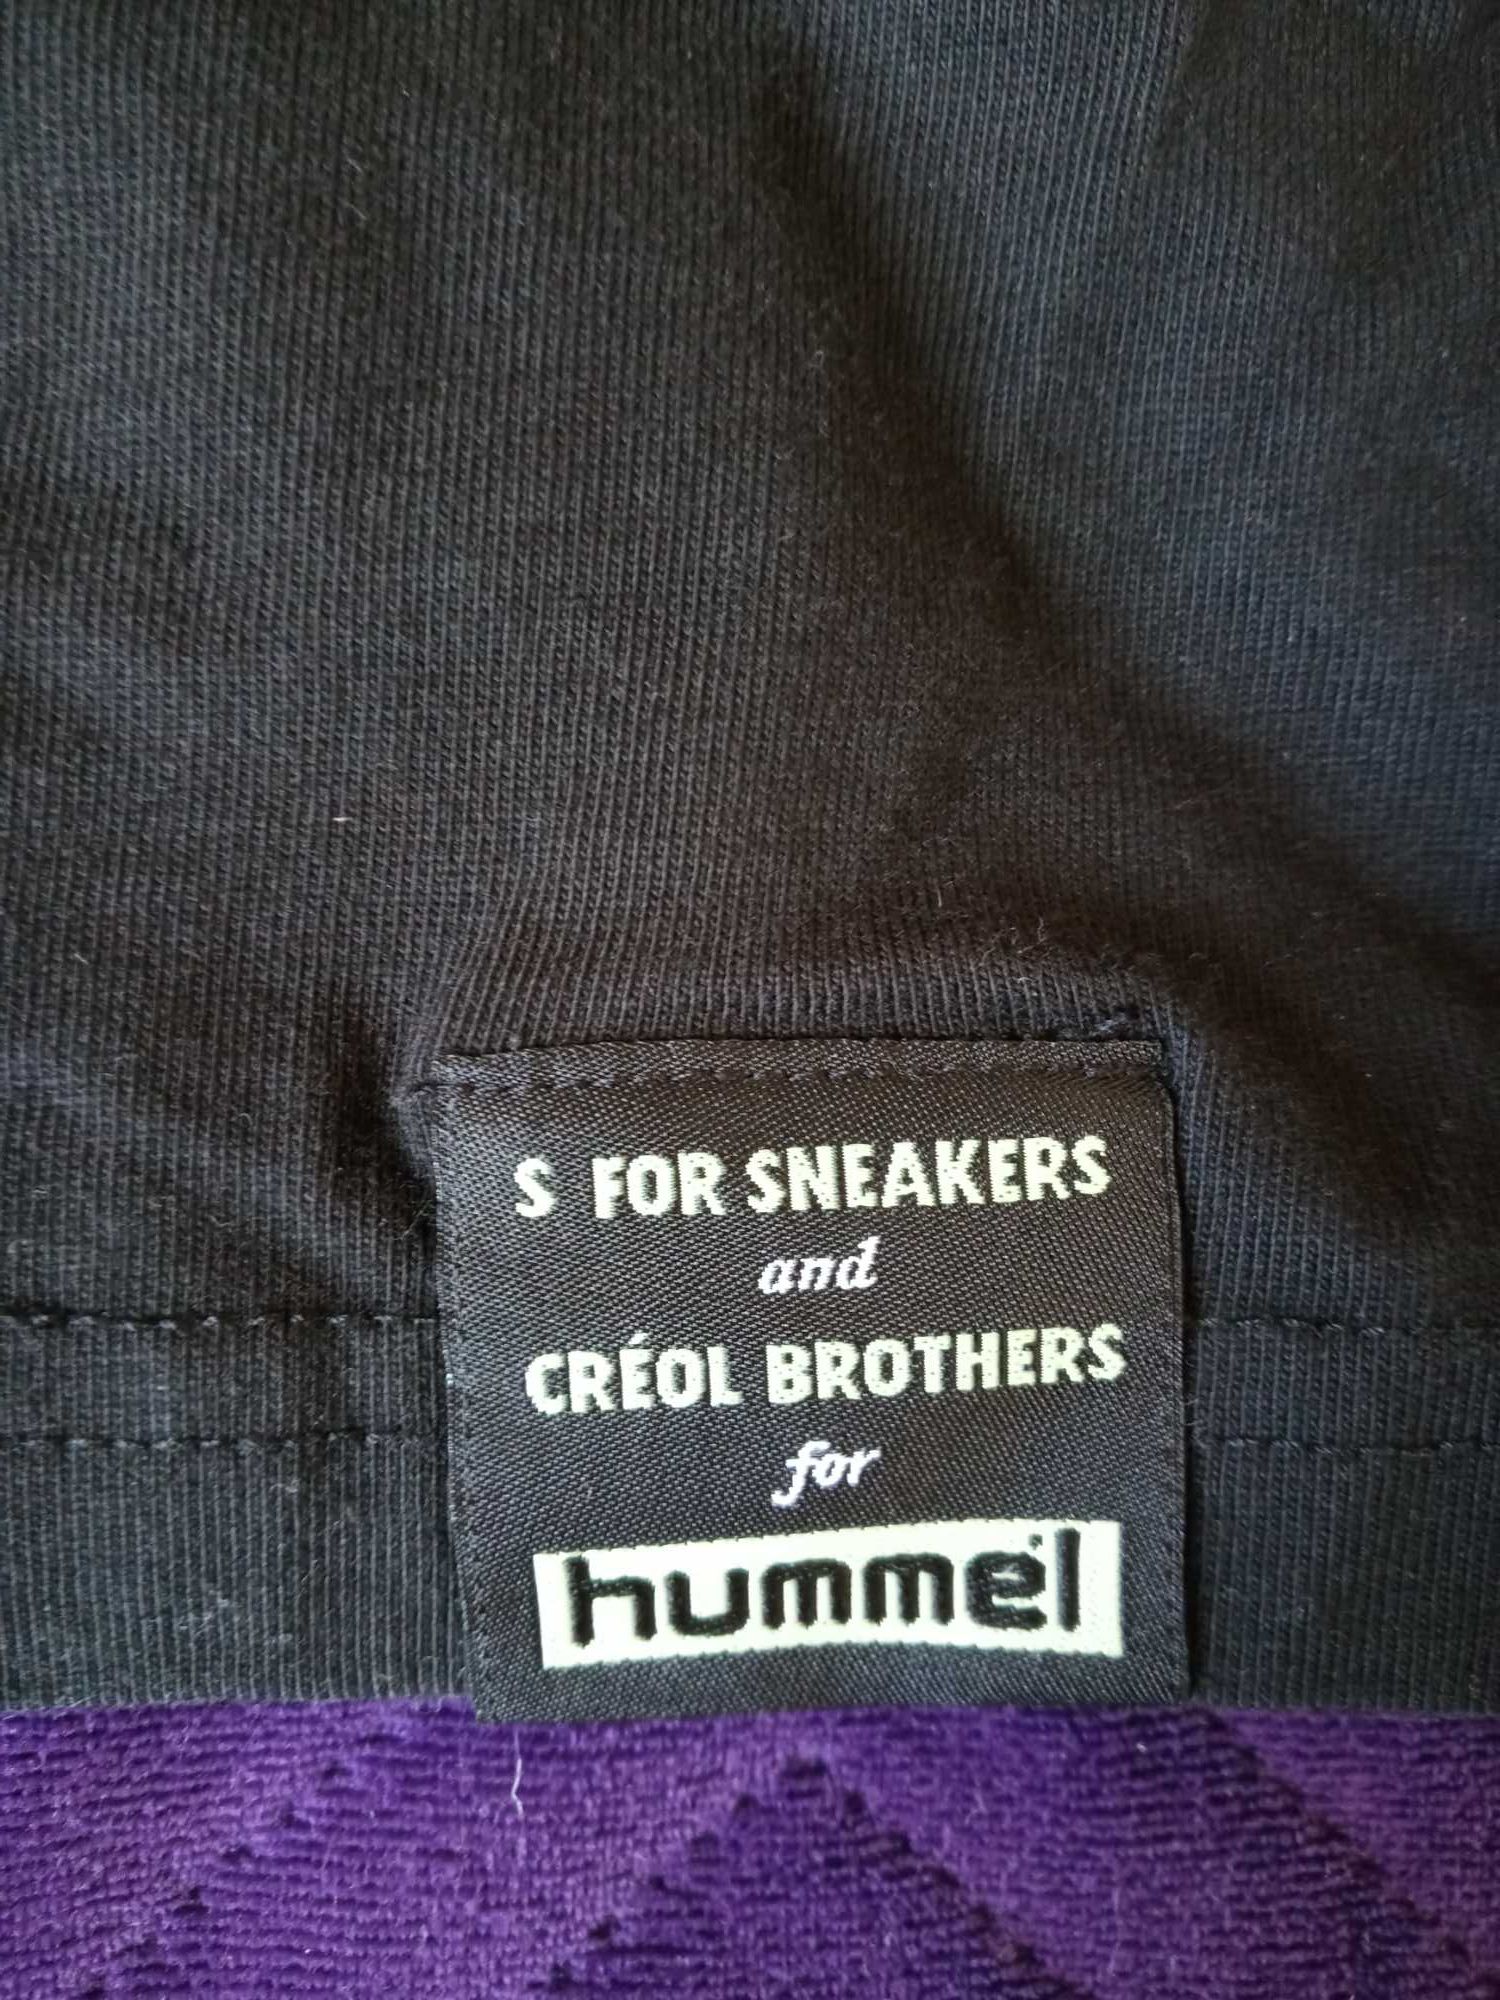 Czarny t-shirt z kwiatami na plecach Hummel Creol Brothers S